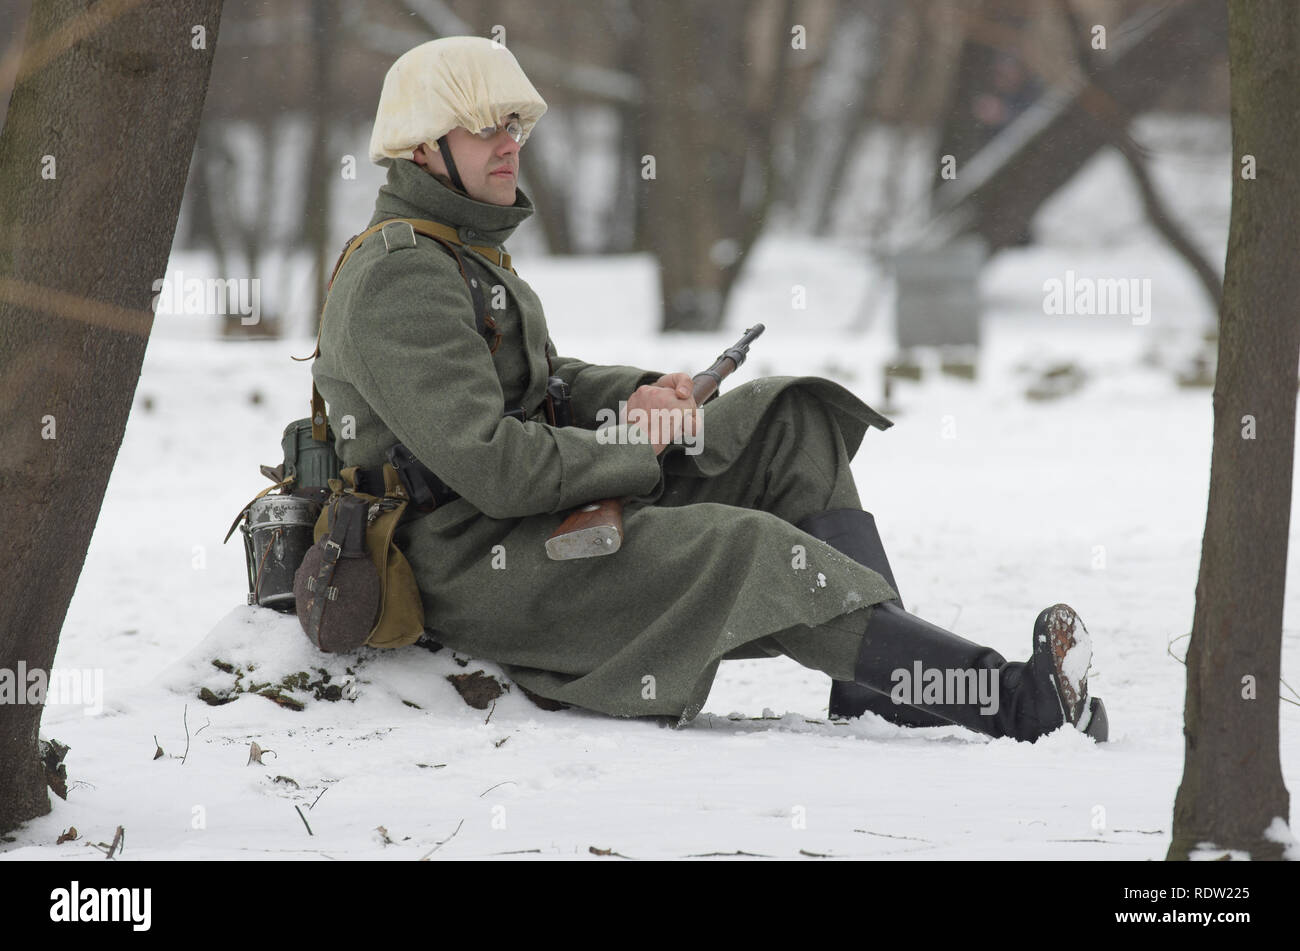 Saint Petersburg, Russie - Février 23, 2017 : soldat allemand de la Wehrmacht en devoir. Reconstitution historique de la Seconde Guerre mondiale. Banque D'Images